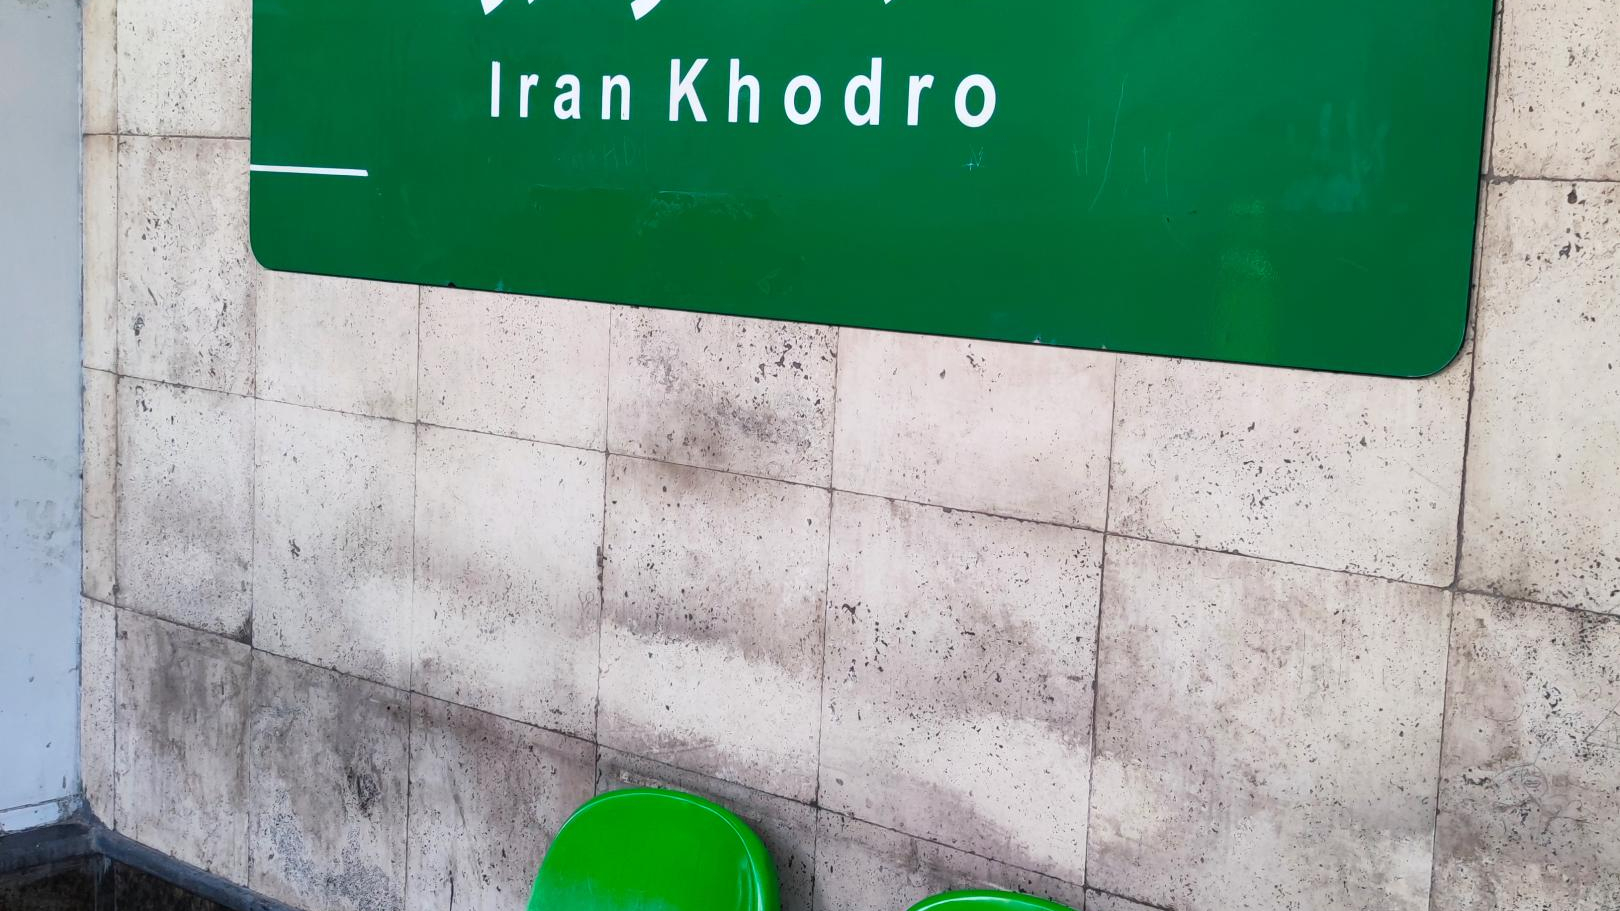 ایستگاه مترو ایران خودرو